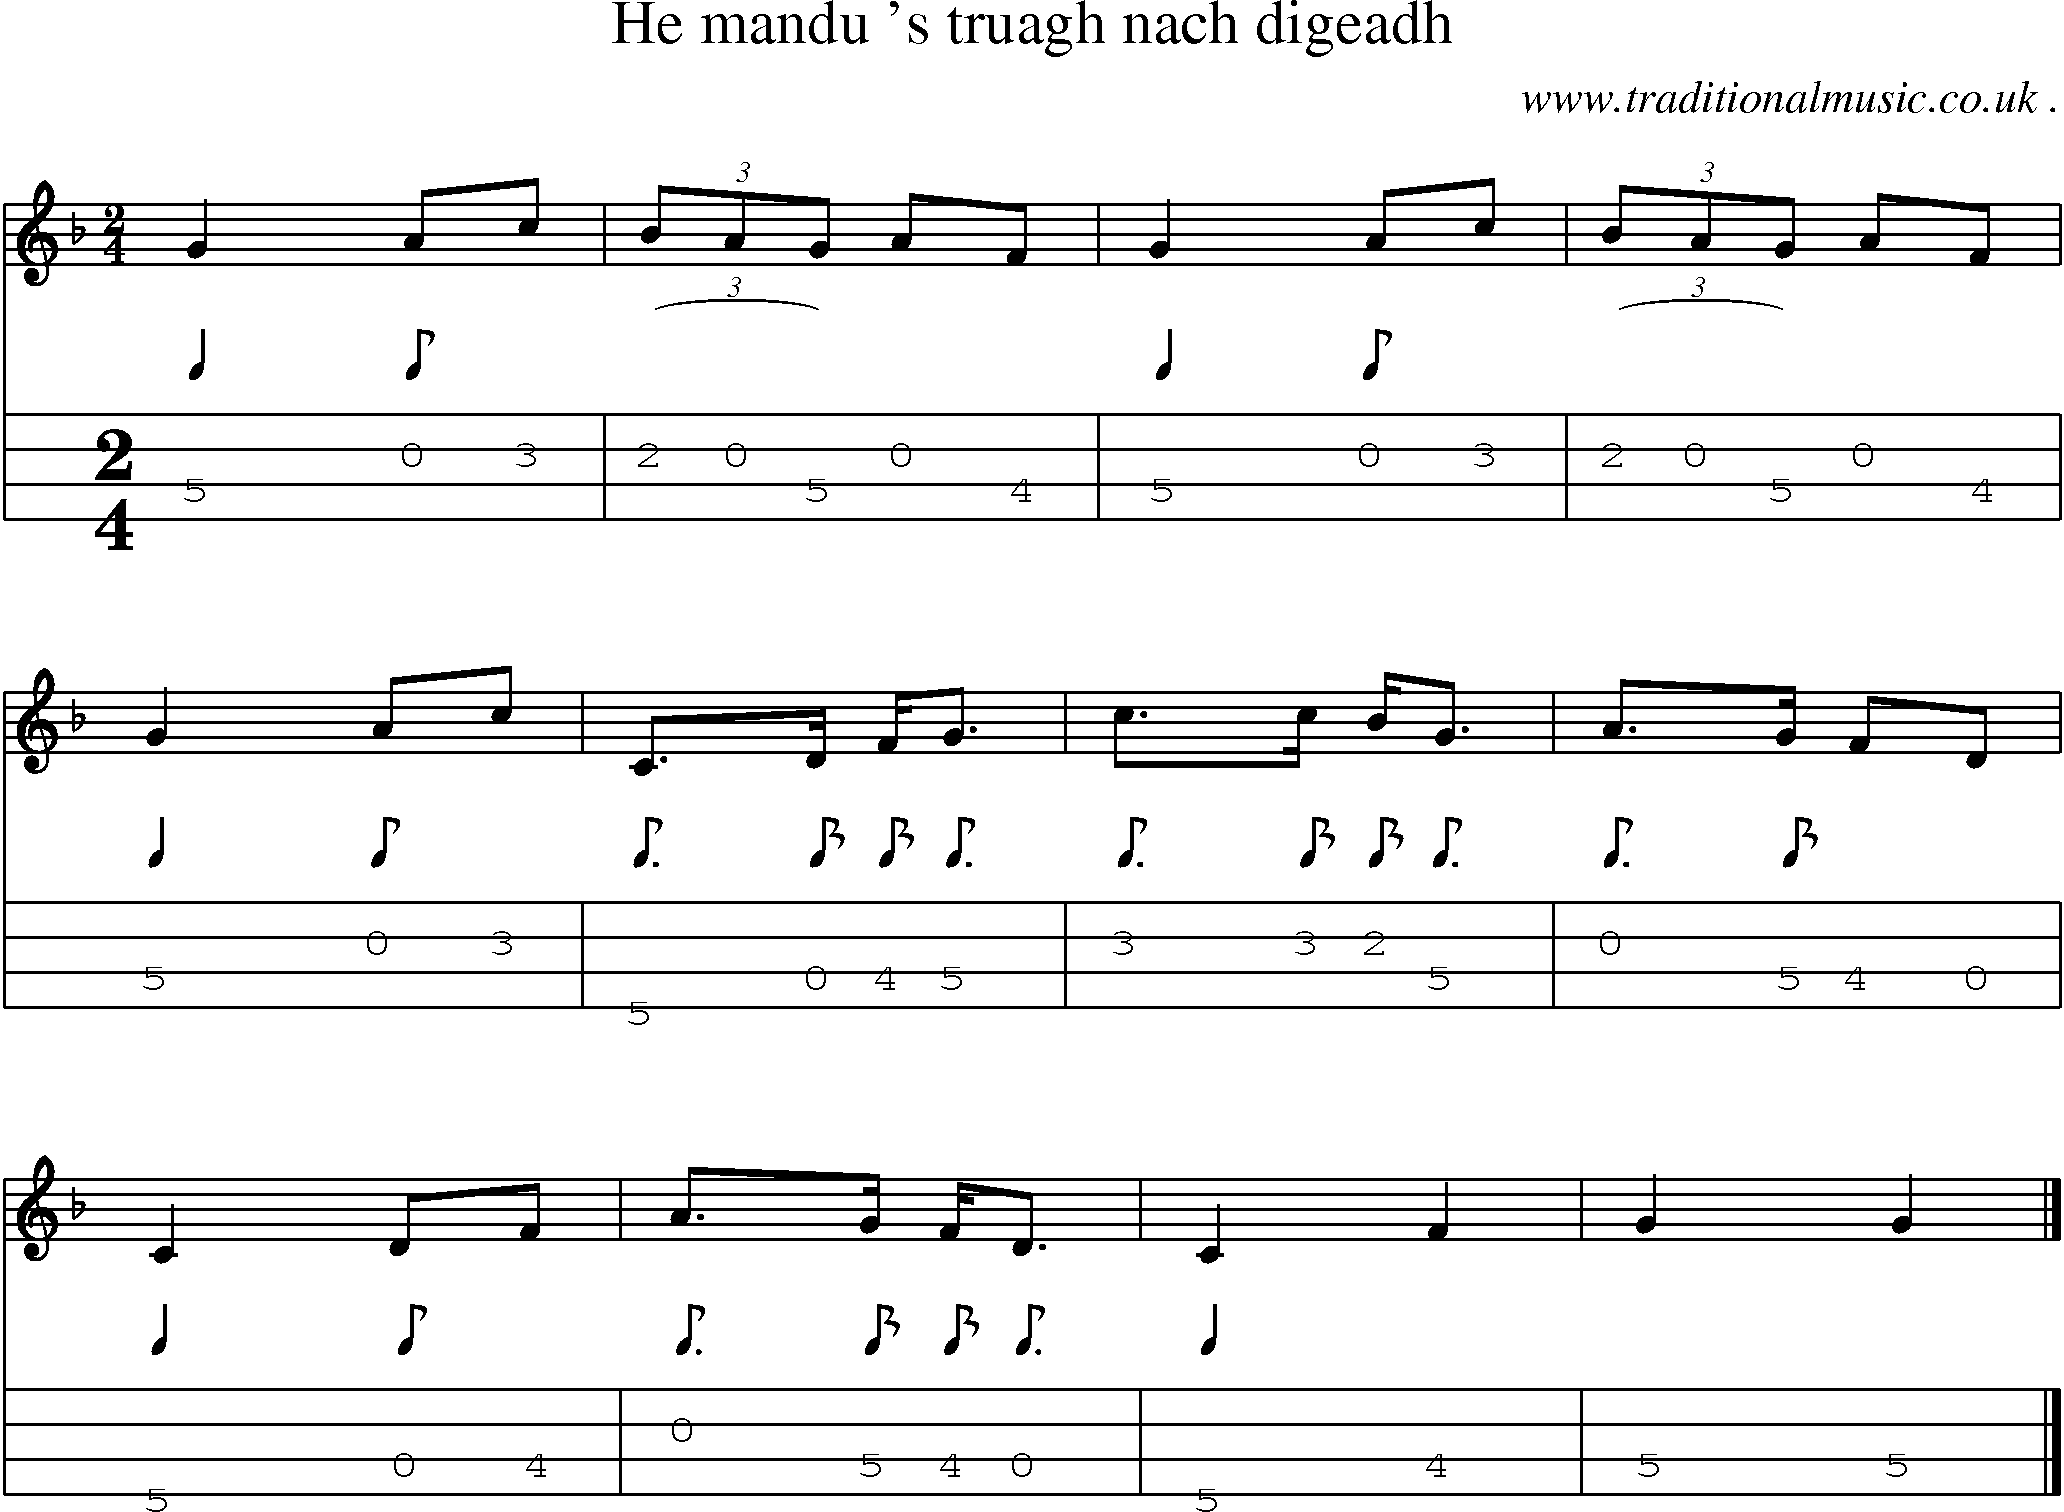 Sheet-music  score, Chords and Mandolin Tabs for He Mandu S Truagh Nach Digeadh